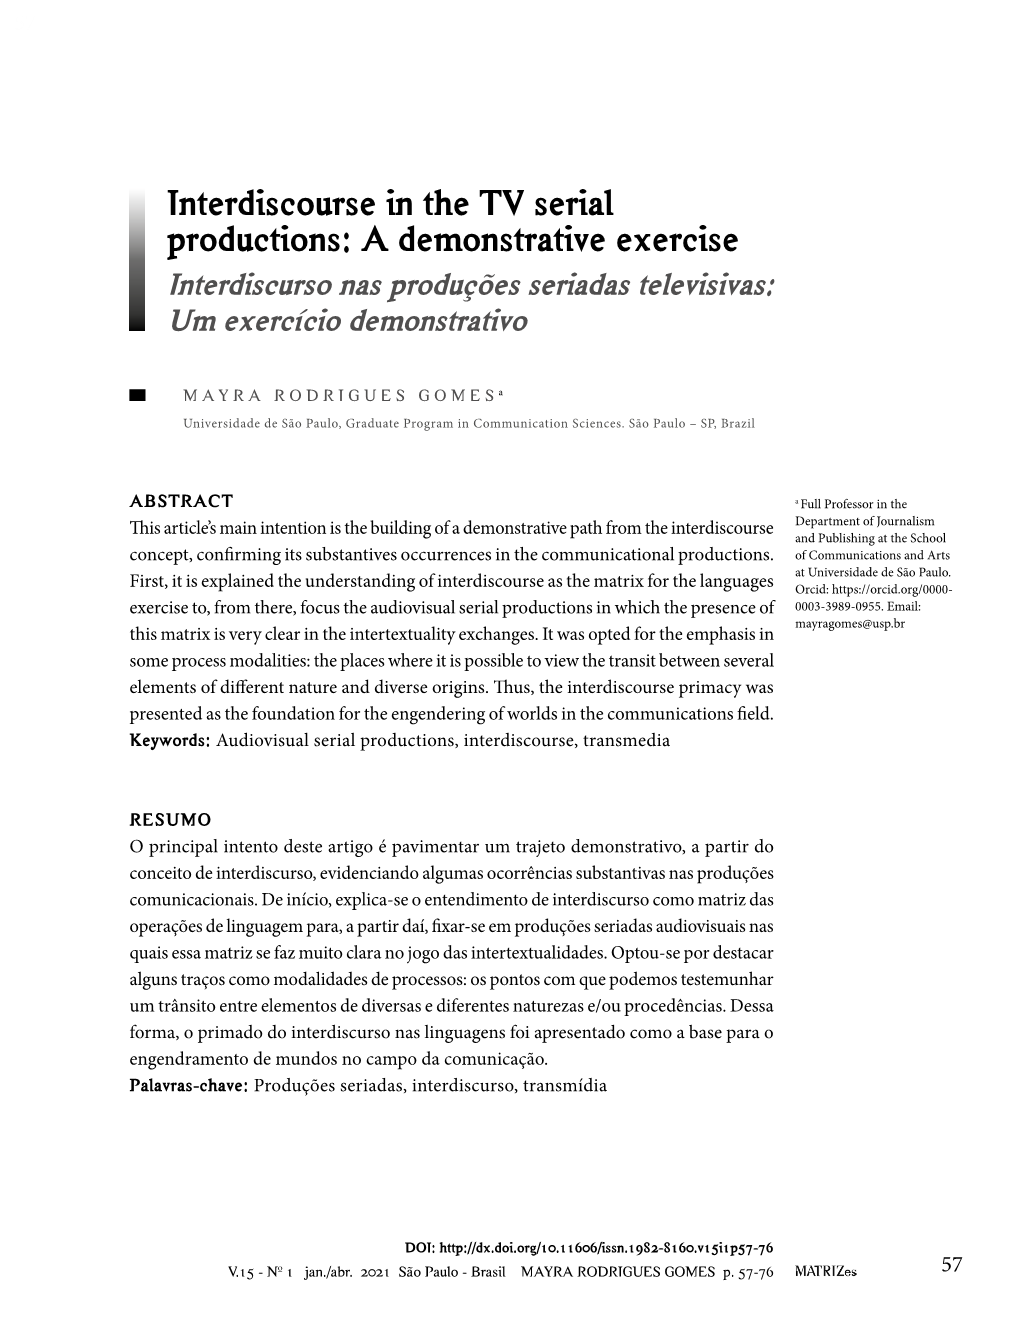 Interdiscourse in the TV Serial Productions: a Demonstrative Exercise Interdiscurso Nas Produções Seriadas Televisivas: Um Exercício Demonstrativo